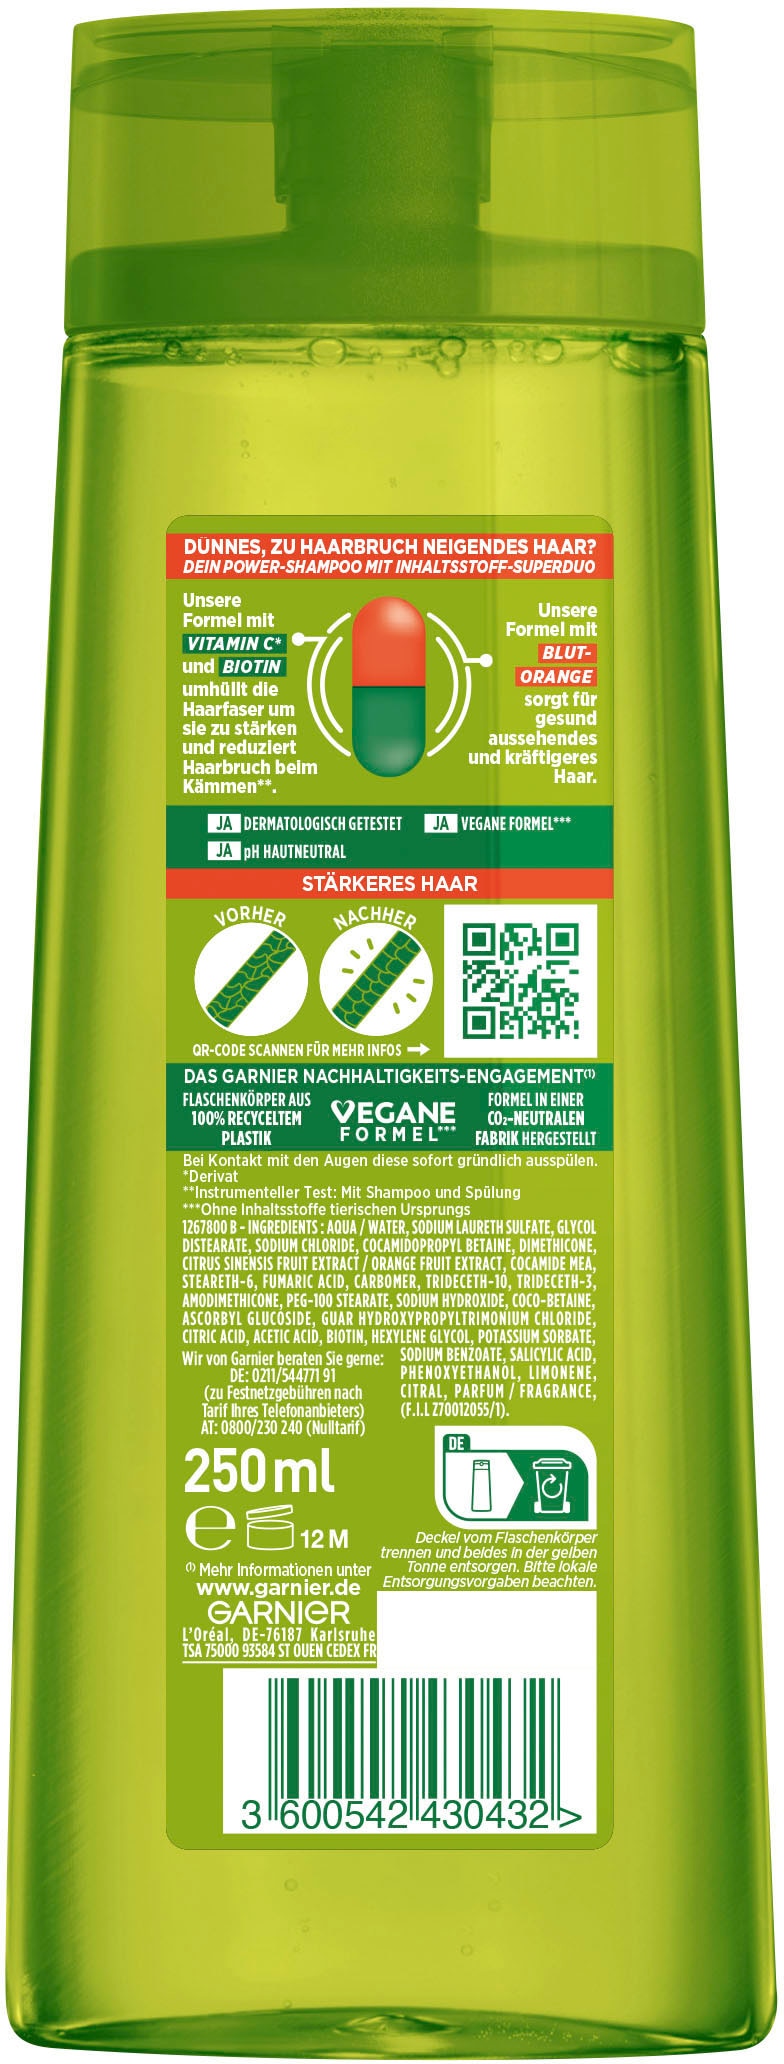 UNIVERSAL »Garnier Kraft online Shampoo« & GARNIER Fructis Vitamine bei Haarshampoo